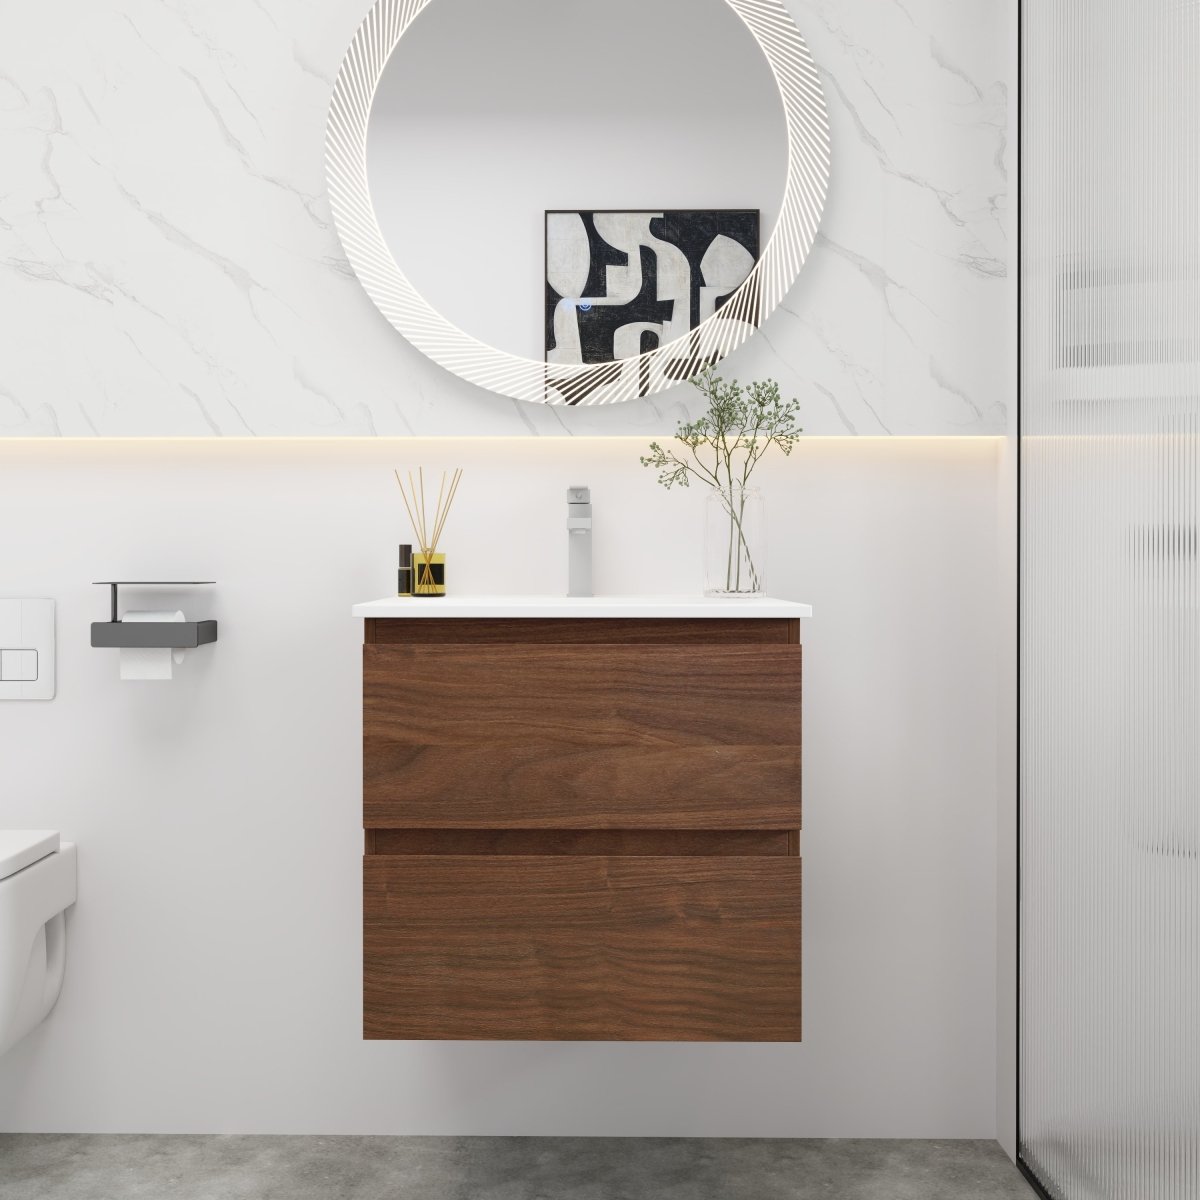 ExBrite 24" Brown Oak Bathroom Vanity With Gel Basin Top